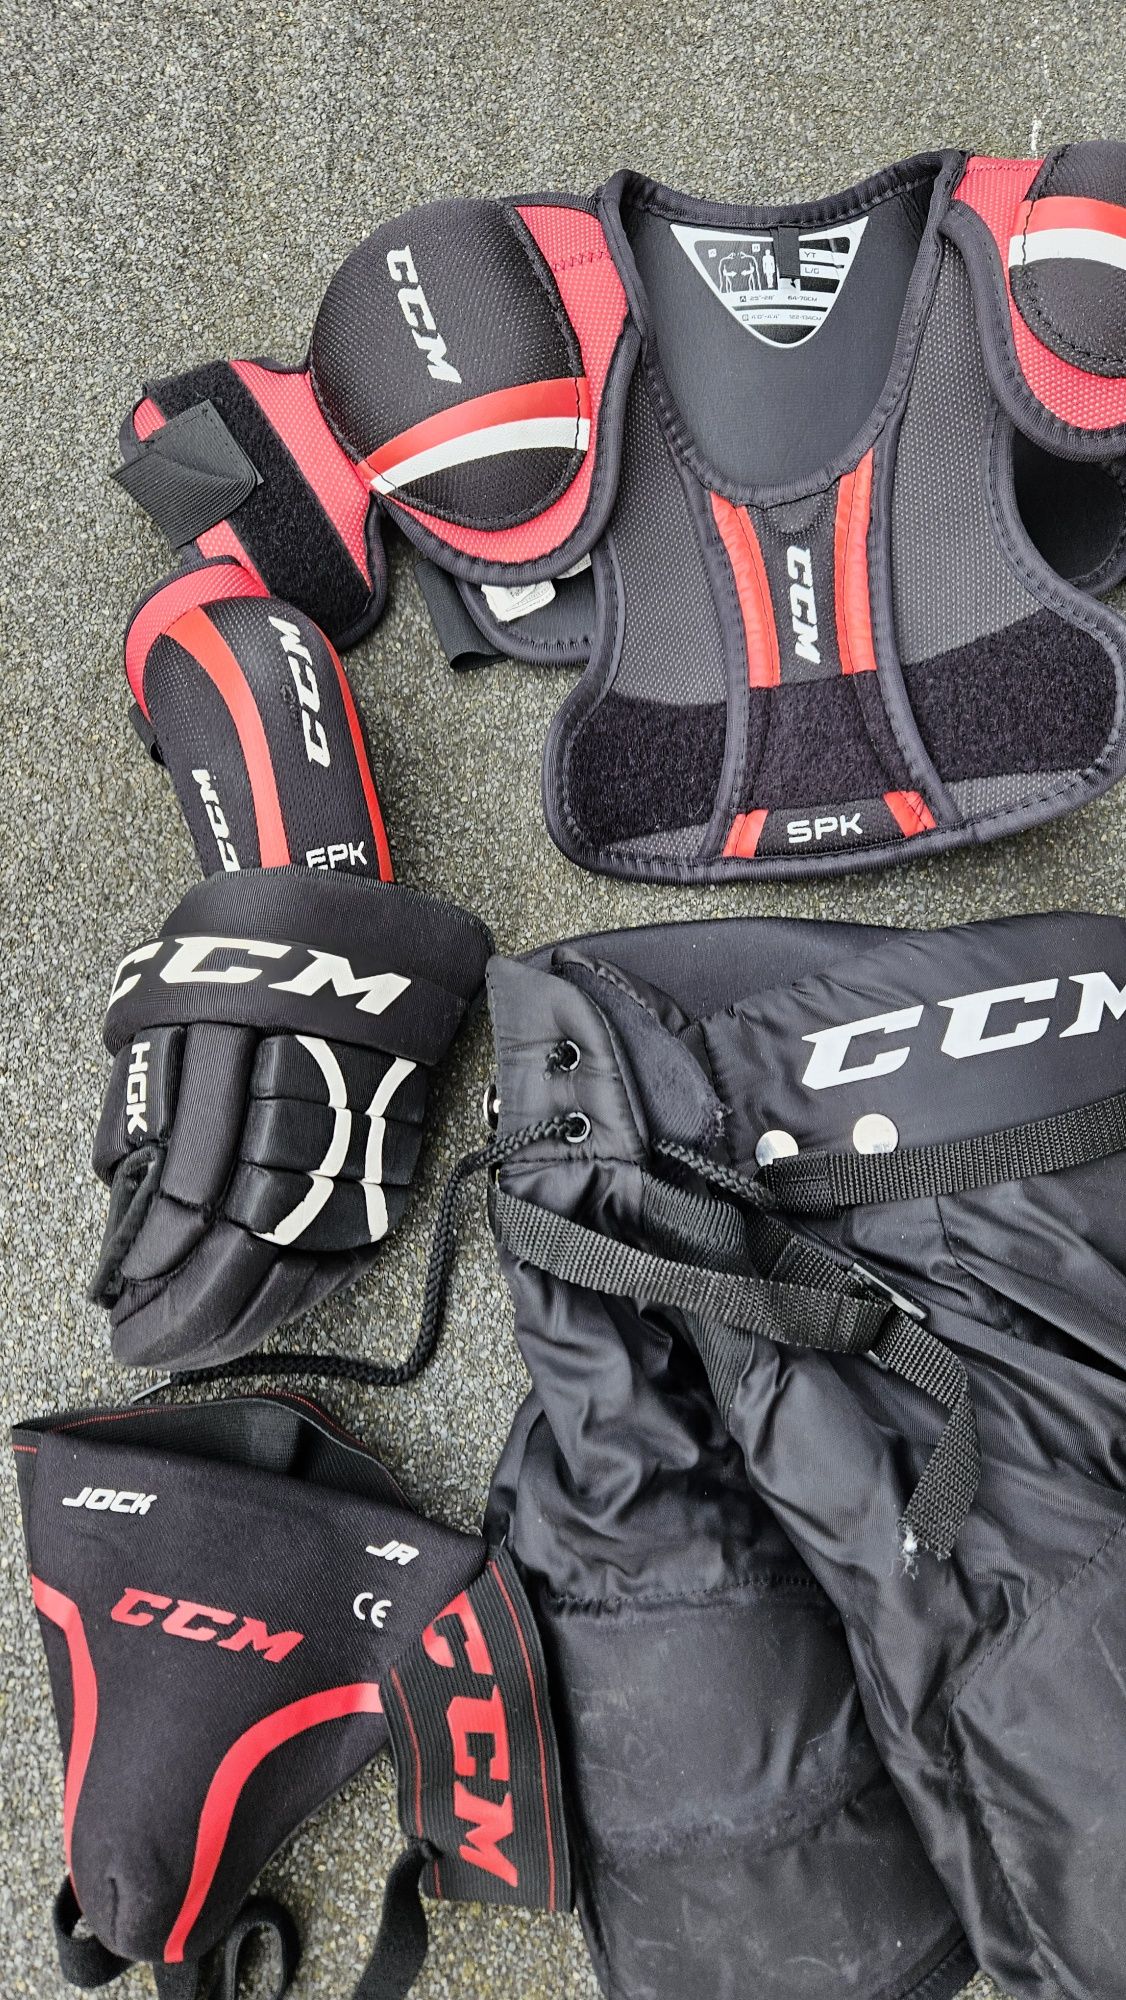 Ochraniacze do hokeja na lodzie marki CCM Hockey dziecko 1,22-1,34 cmo